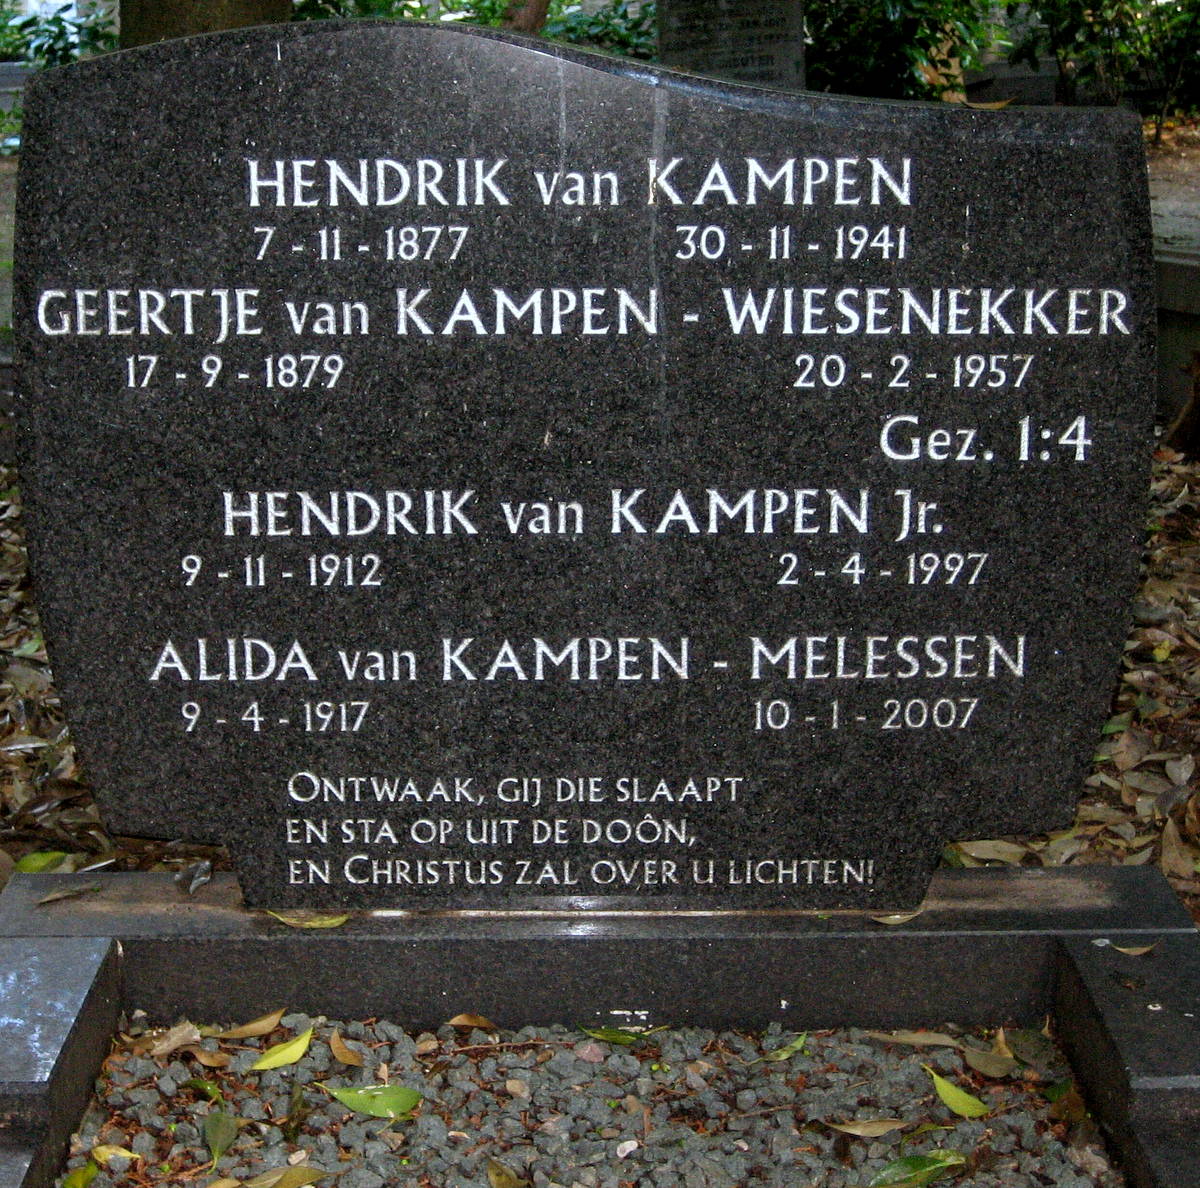 Van Kampen family grave, Bosdrift cemetery, Hilversum